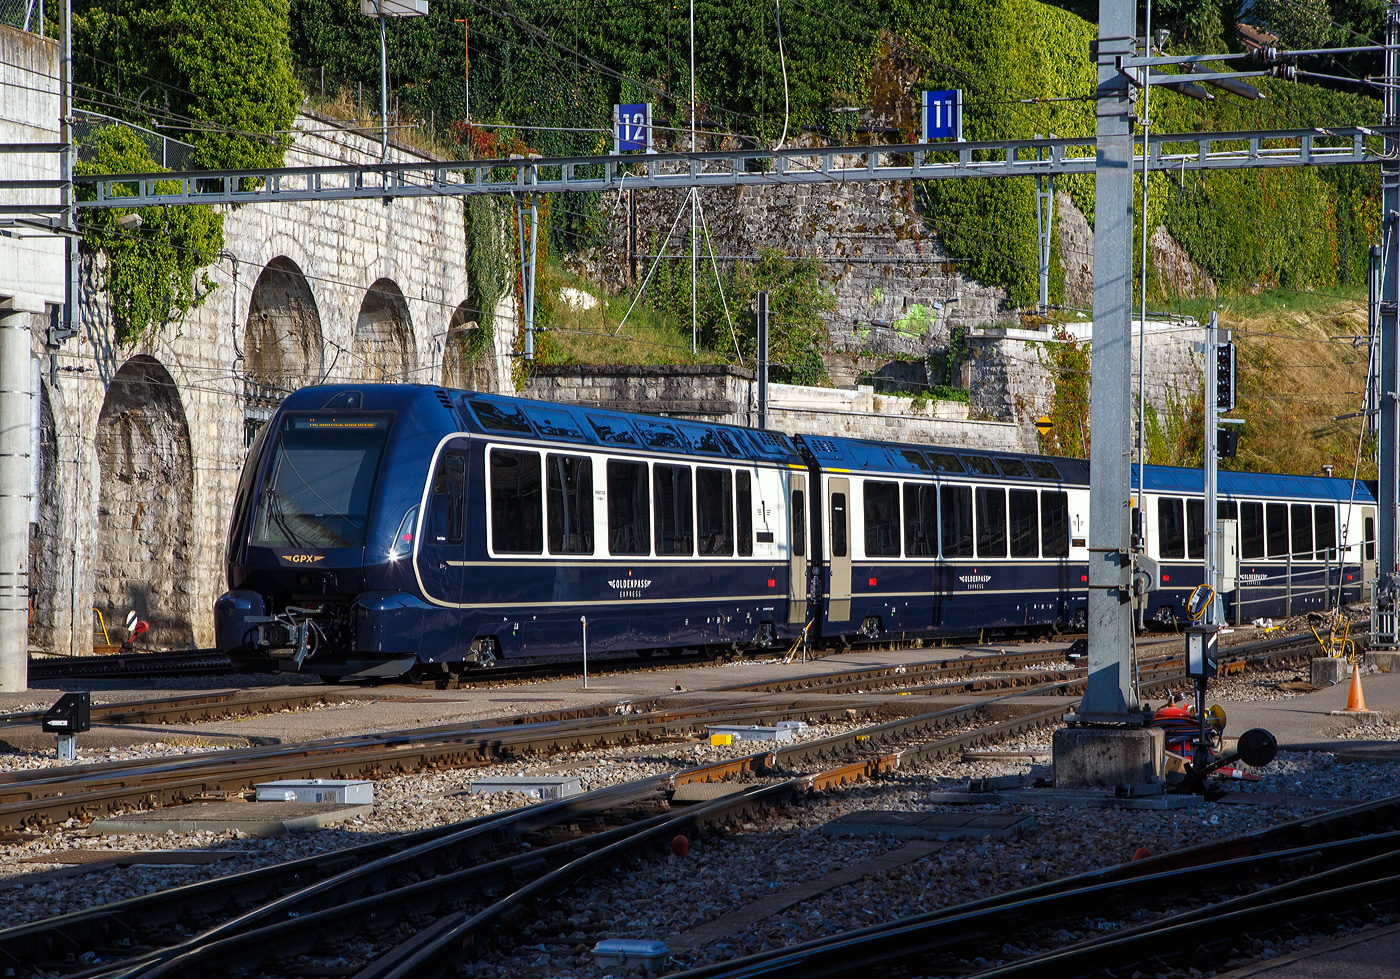 Ein MOB GPX - GoldenPass Express Zug (Stadler GPX-Wagen mit variablem Drehgestell der Montreux-Berner Oberland-Bahn AG) ist am 10 September 2023 im Bahnhof Montreux abgestellt. Die Wagen sind hier (von links nach rechts) der Premium-/1.Klasse Steuerwagen Ast 182, der 1.Klasse Wagen As 192 und einem 2.Klasse Wagen Bs.